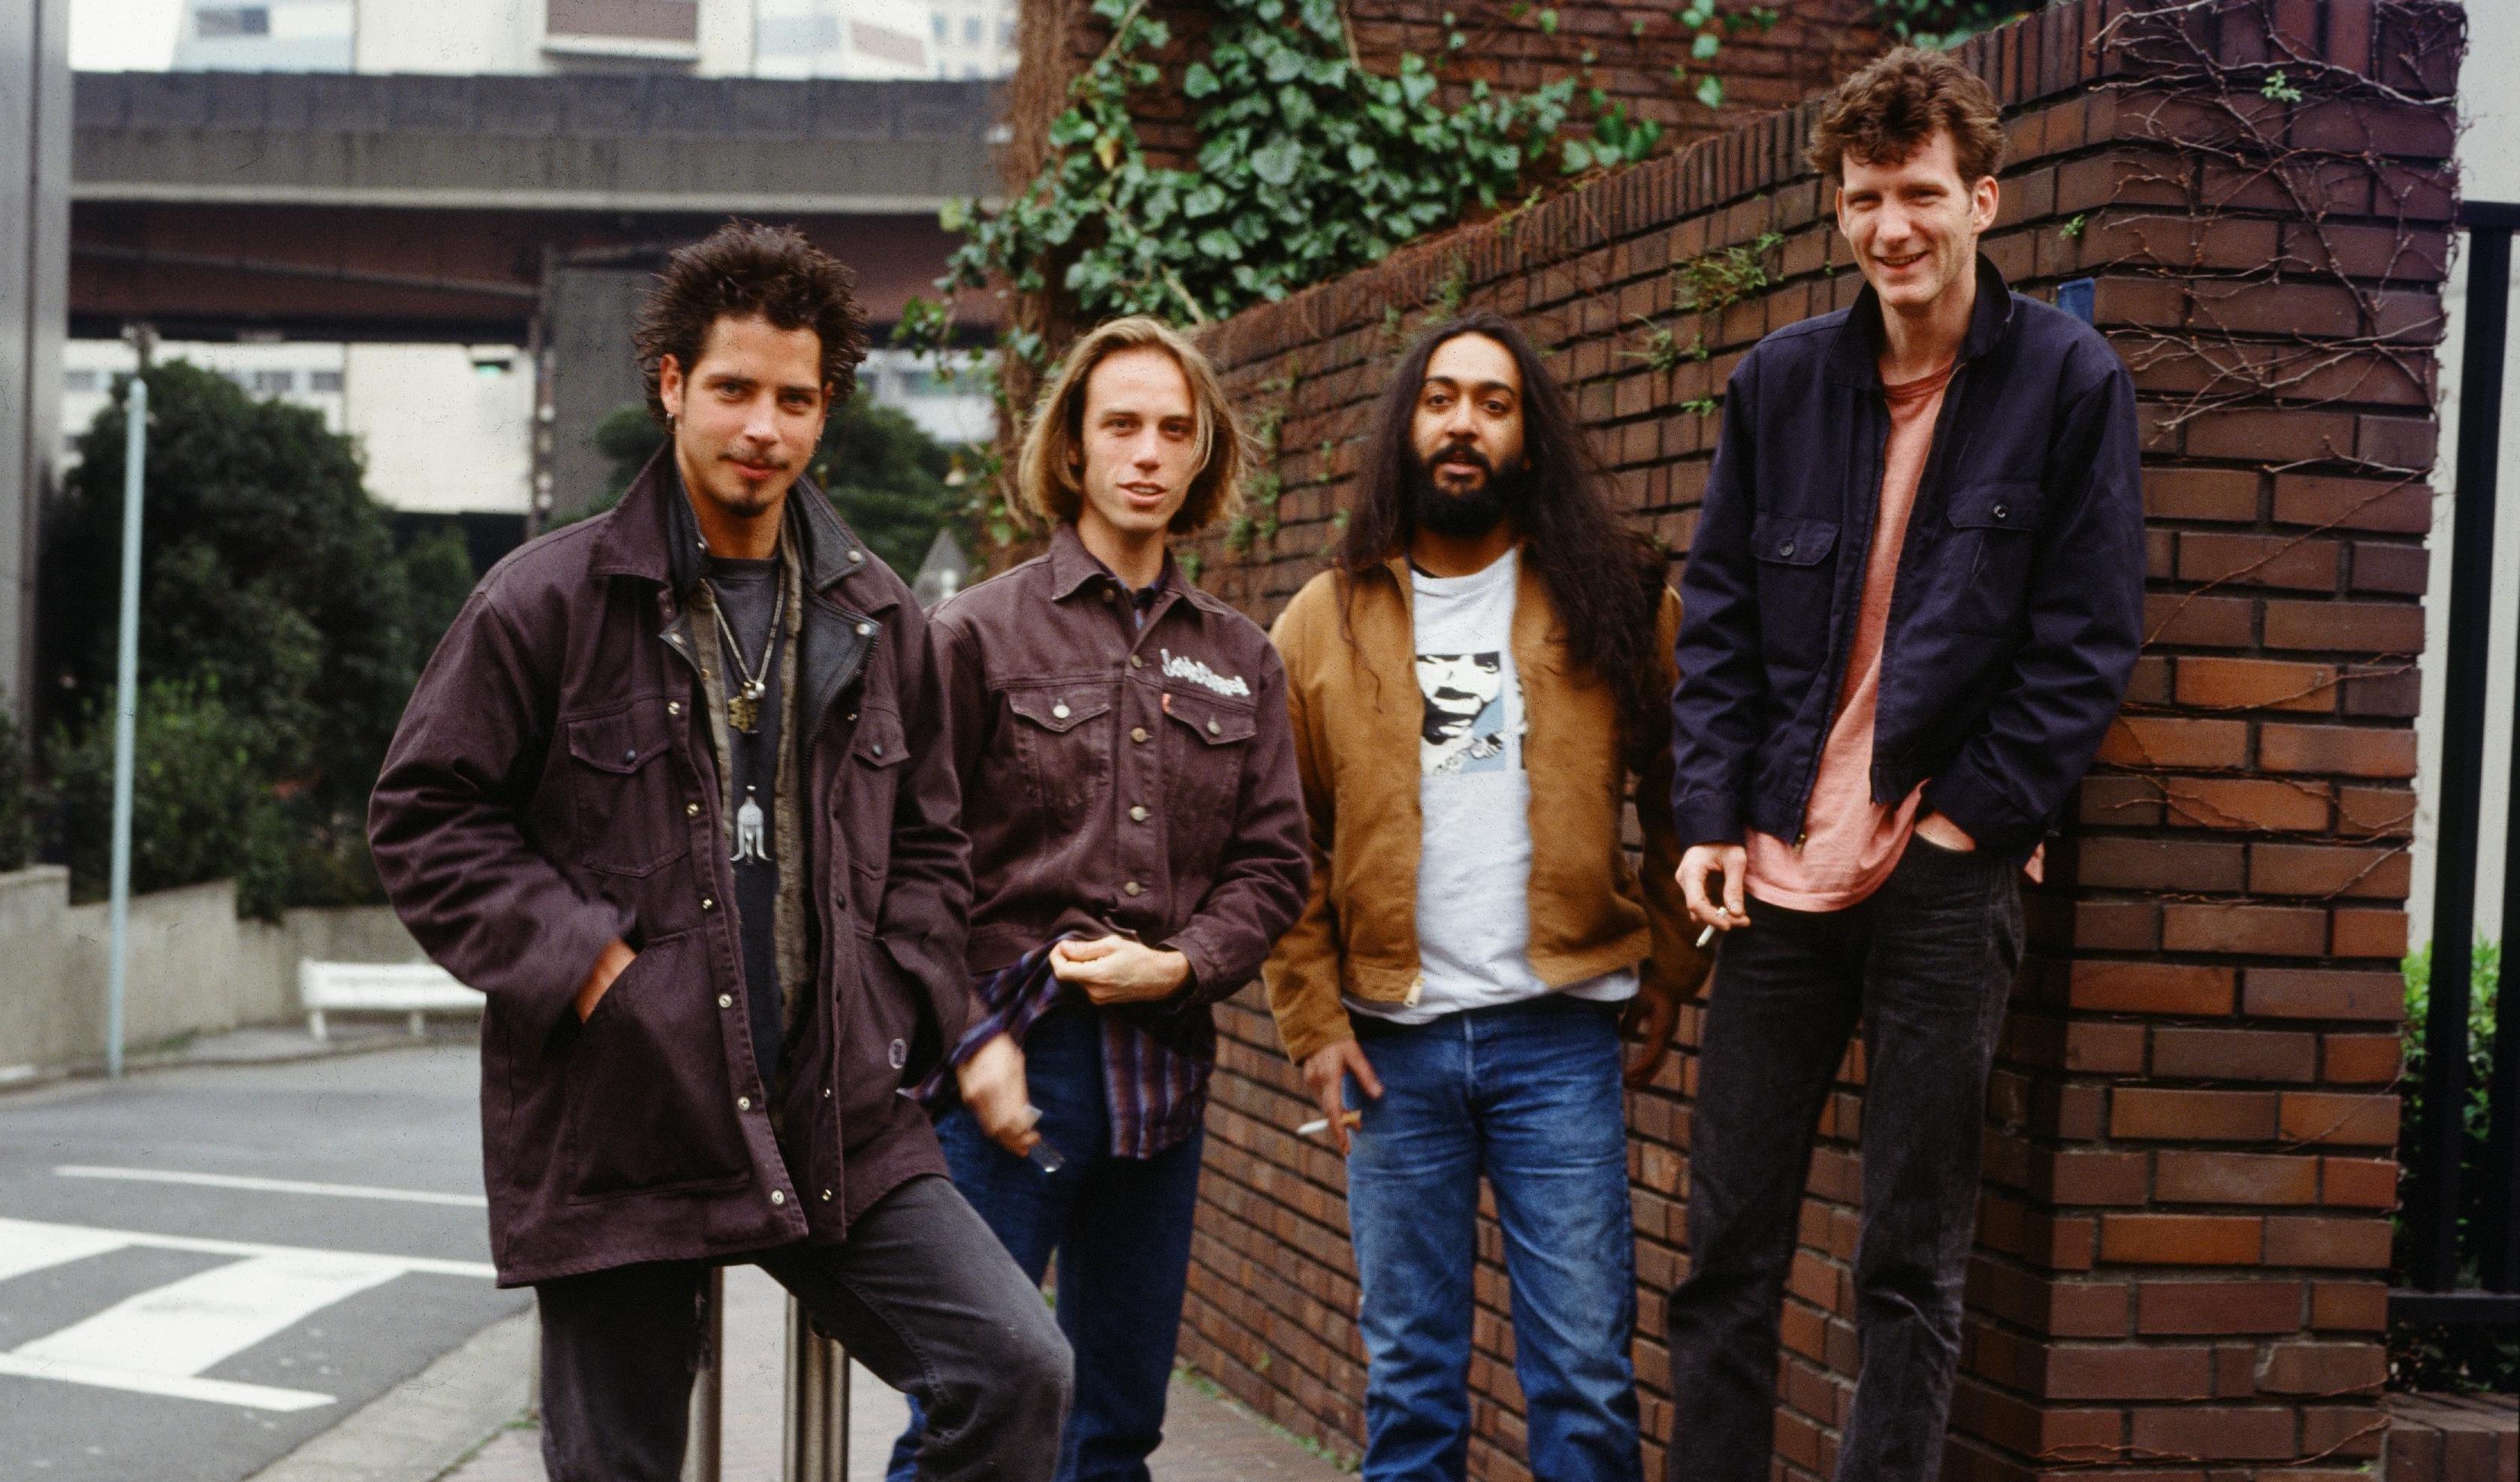 Soundgarden in 1994